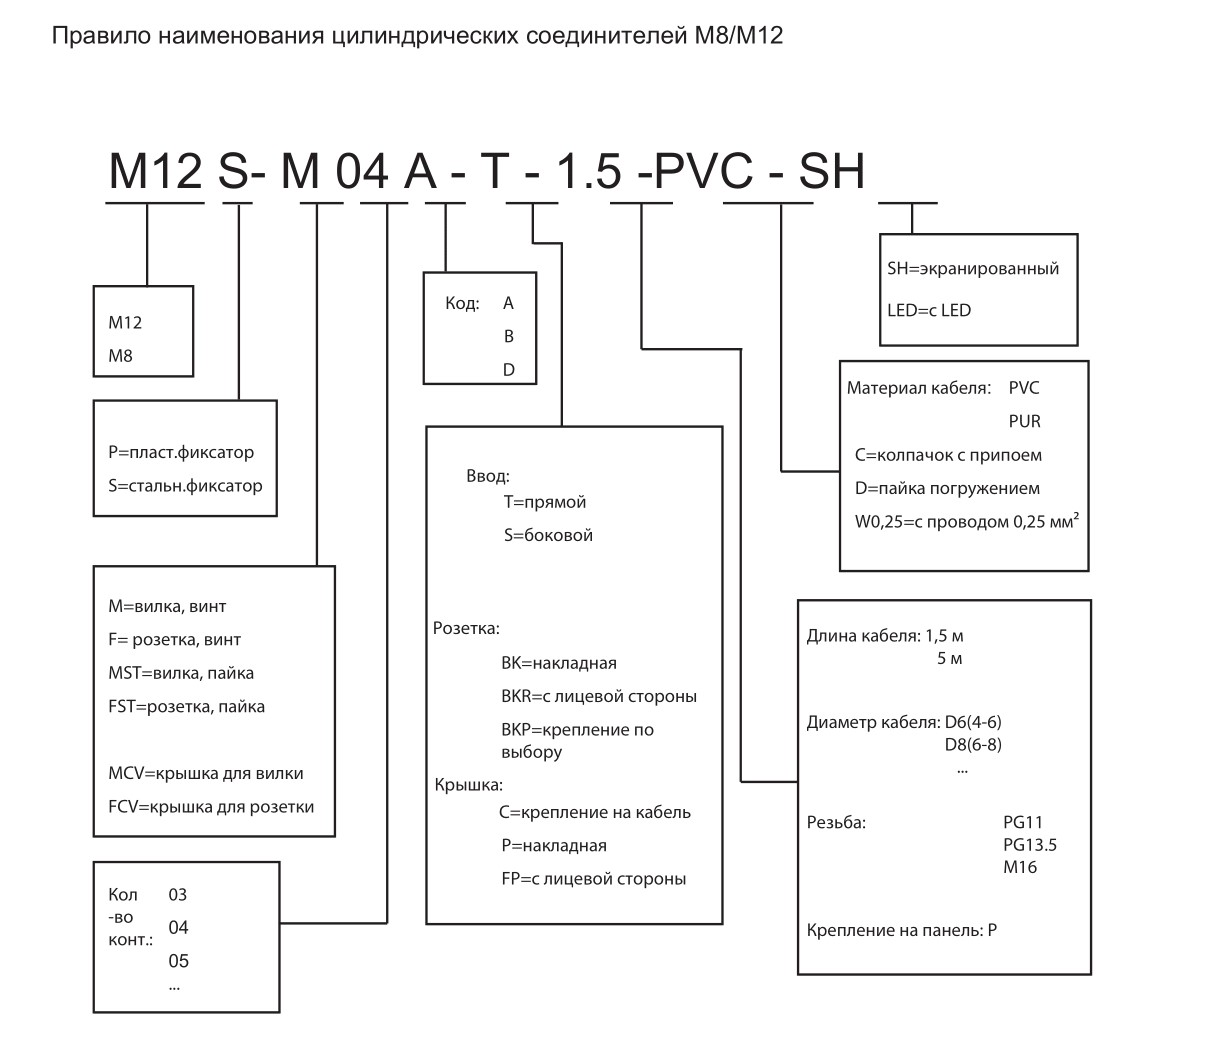 Цилиндрический соединитель-вилка/RJ45 (каб. сборка) M12-M04D-T/RJ45-3.5-DPUR-PFN 1630040014031: Структура обозначения